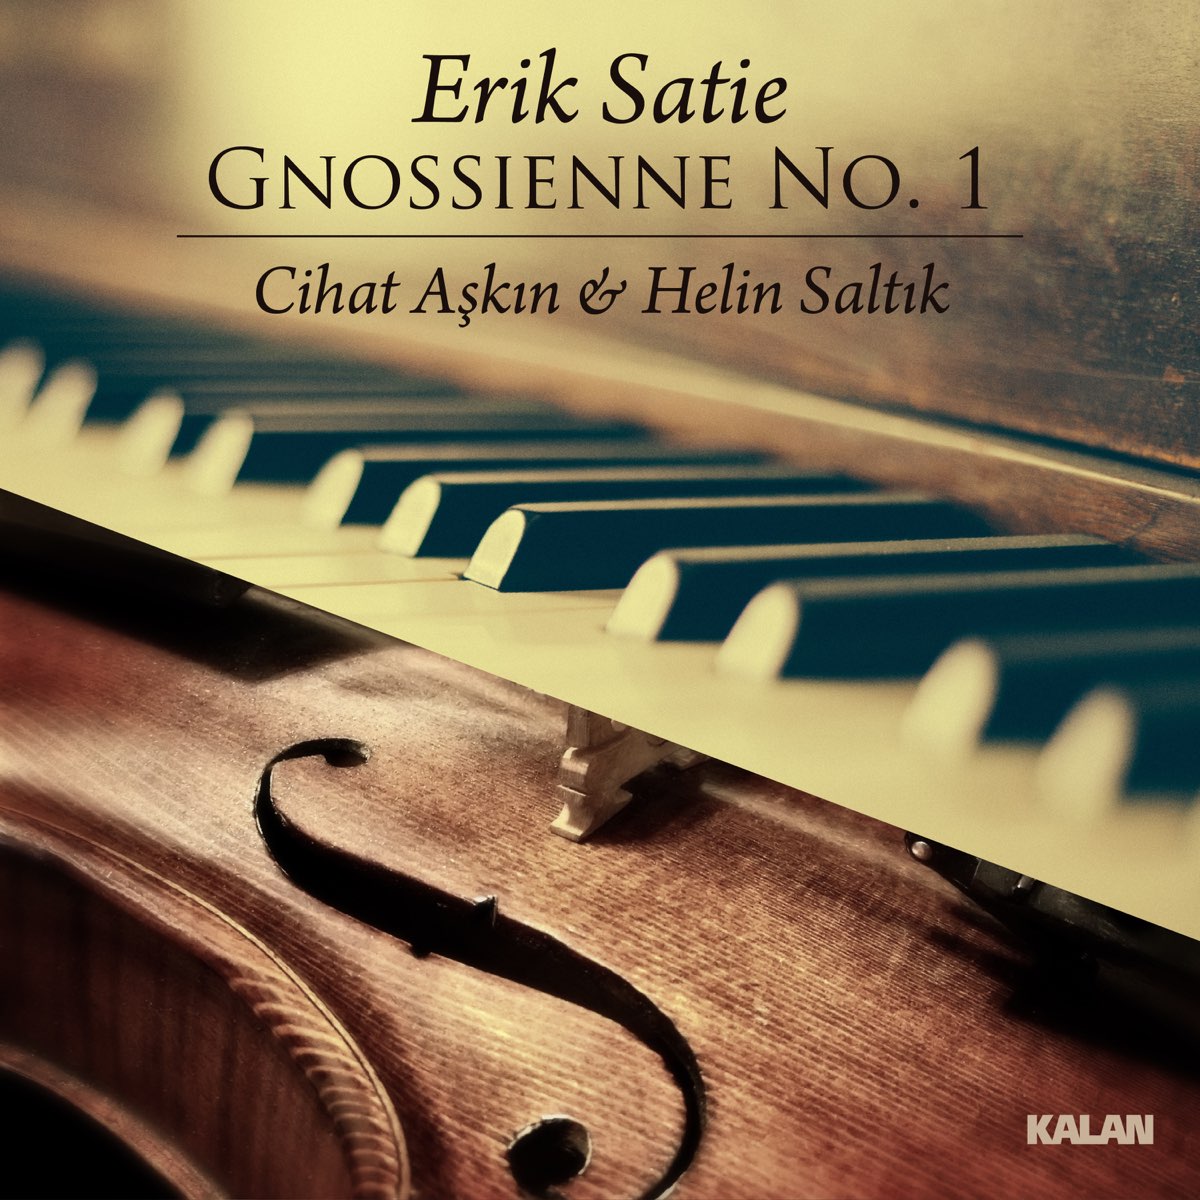 Gnossienne: No. 1 (Arr. for Violin and Piano by Cihat Aşkın & Helin Saltık)  - Single de Cihat Aşkın & Helin Saltık en Apple Music